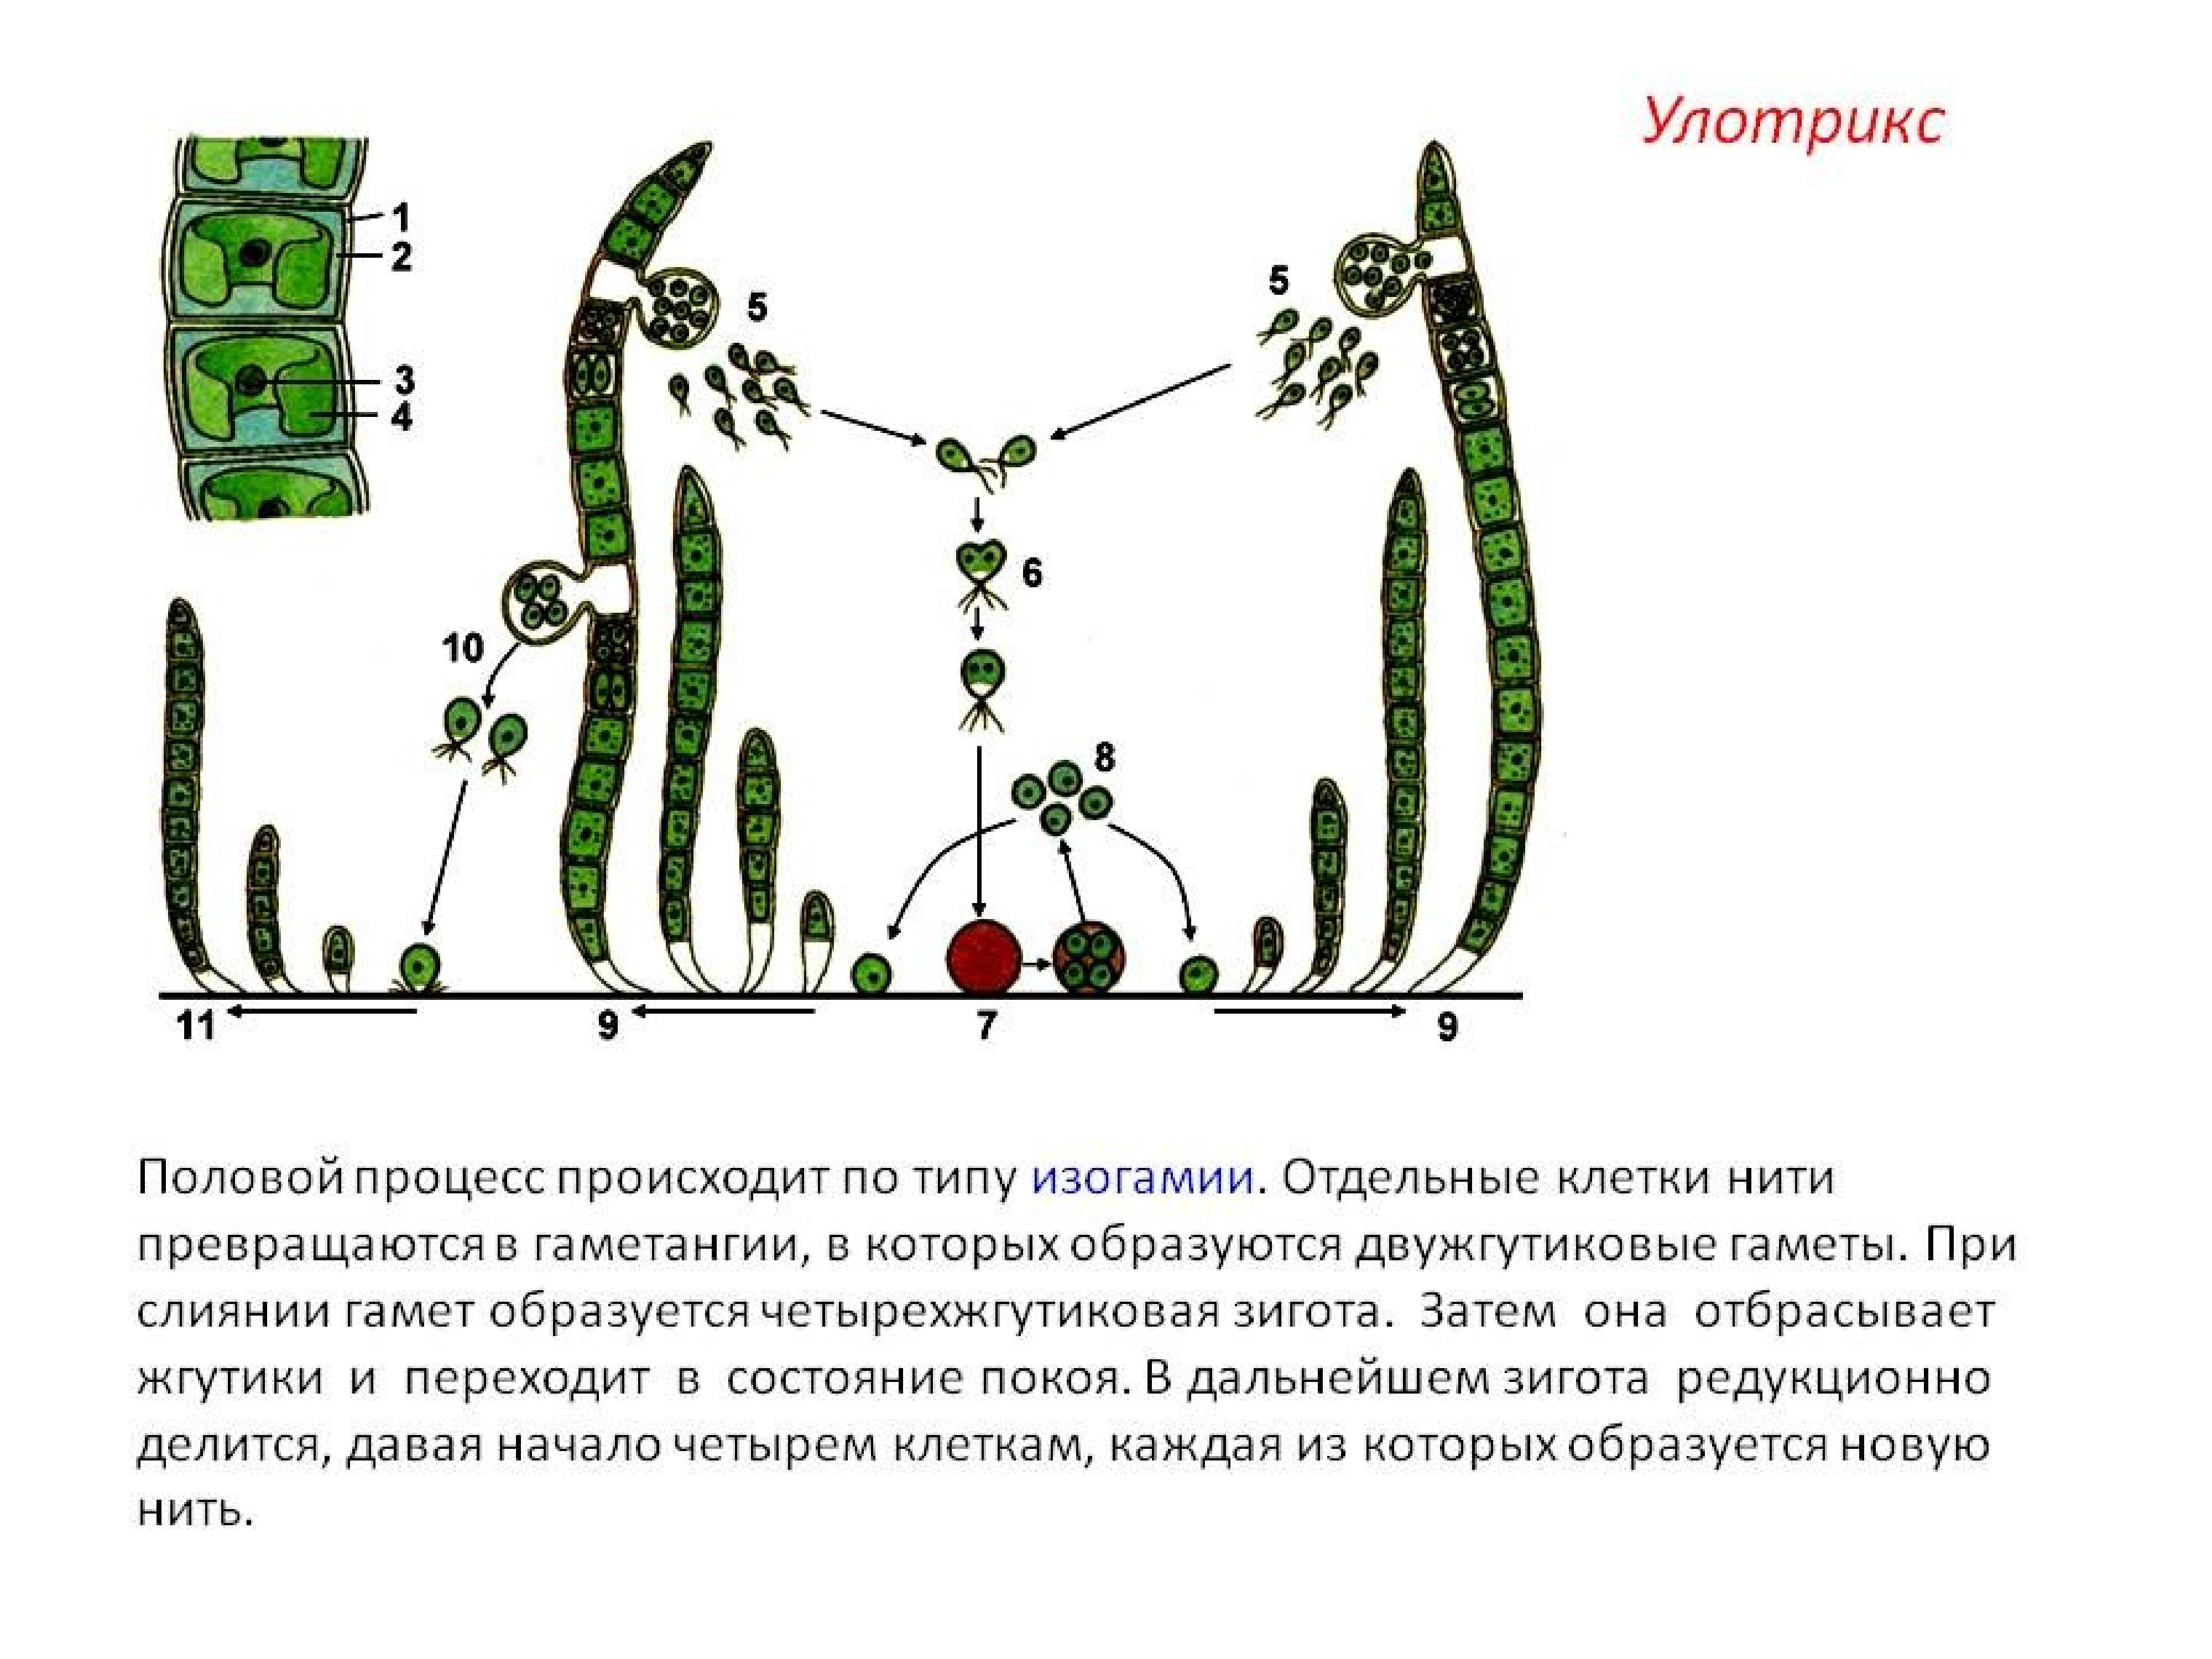 Способ размножение водоросль улотрикс. Зеленые водоросли улотрикс. Улотрикс цикл размножения. Размножение водоросли улотрикса. Улотрикс половой процесс.